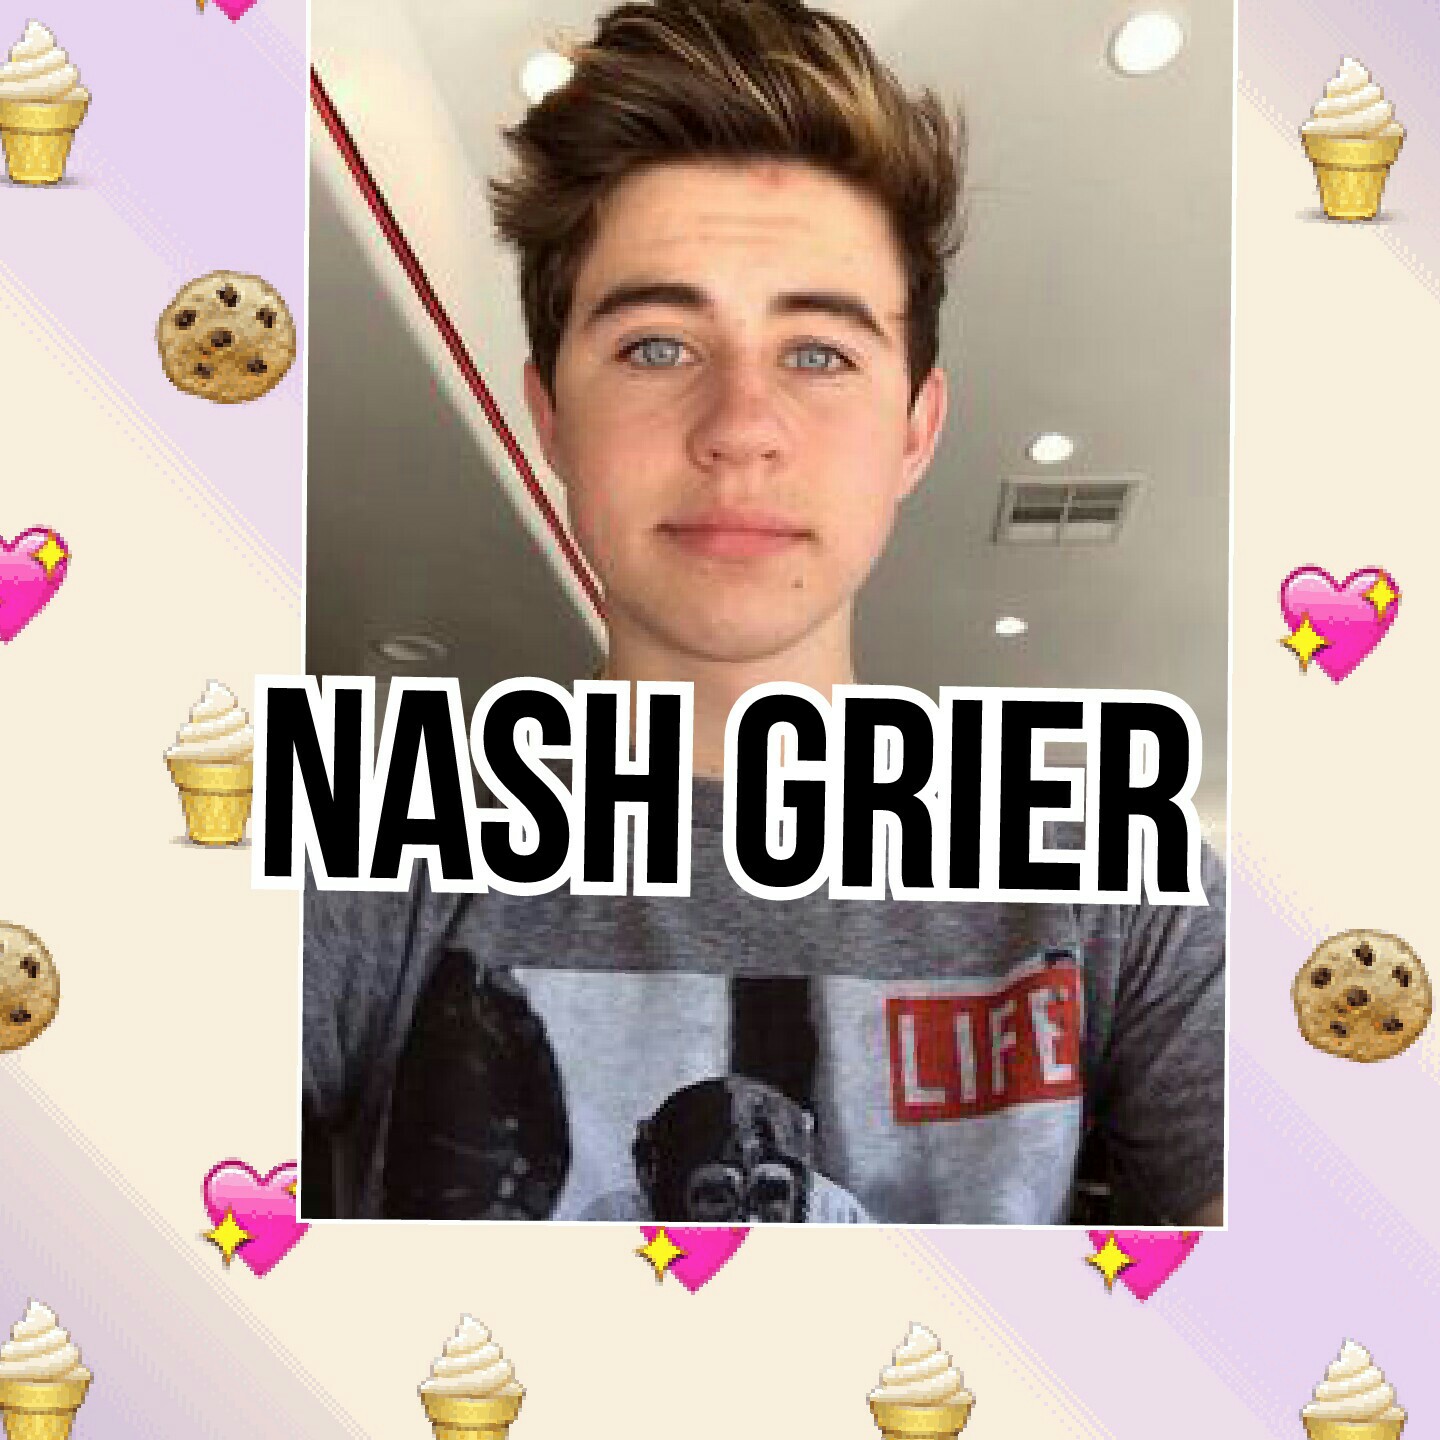 Nash grier